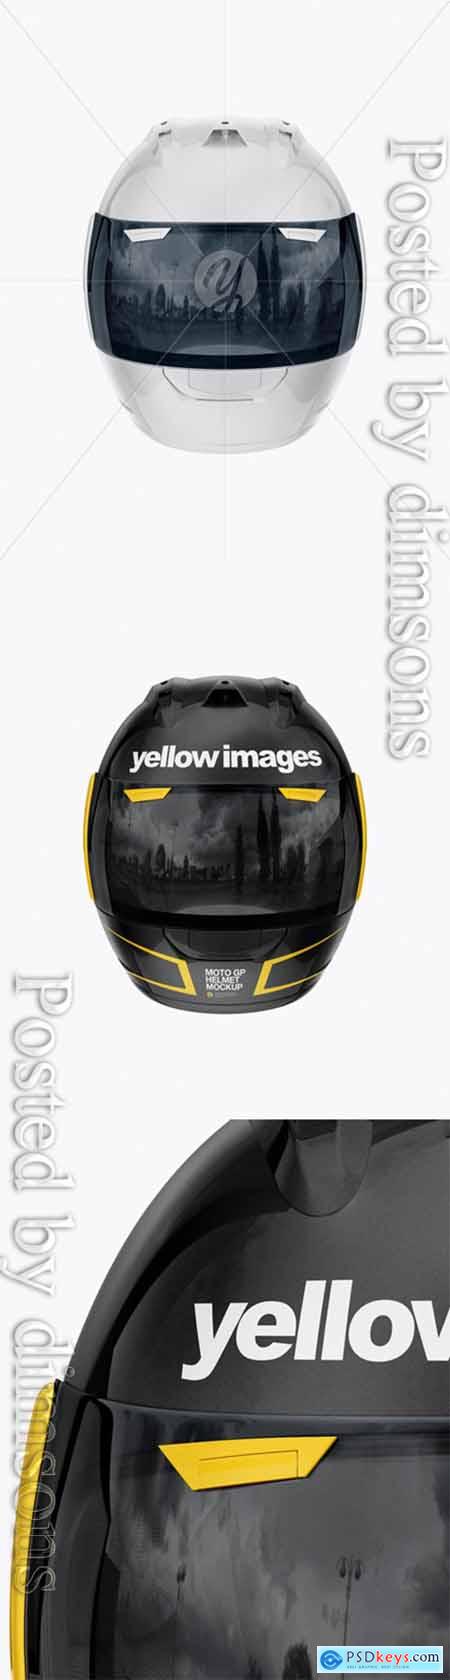 Moto GP Helmet Mockup - Front View